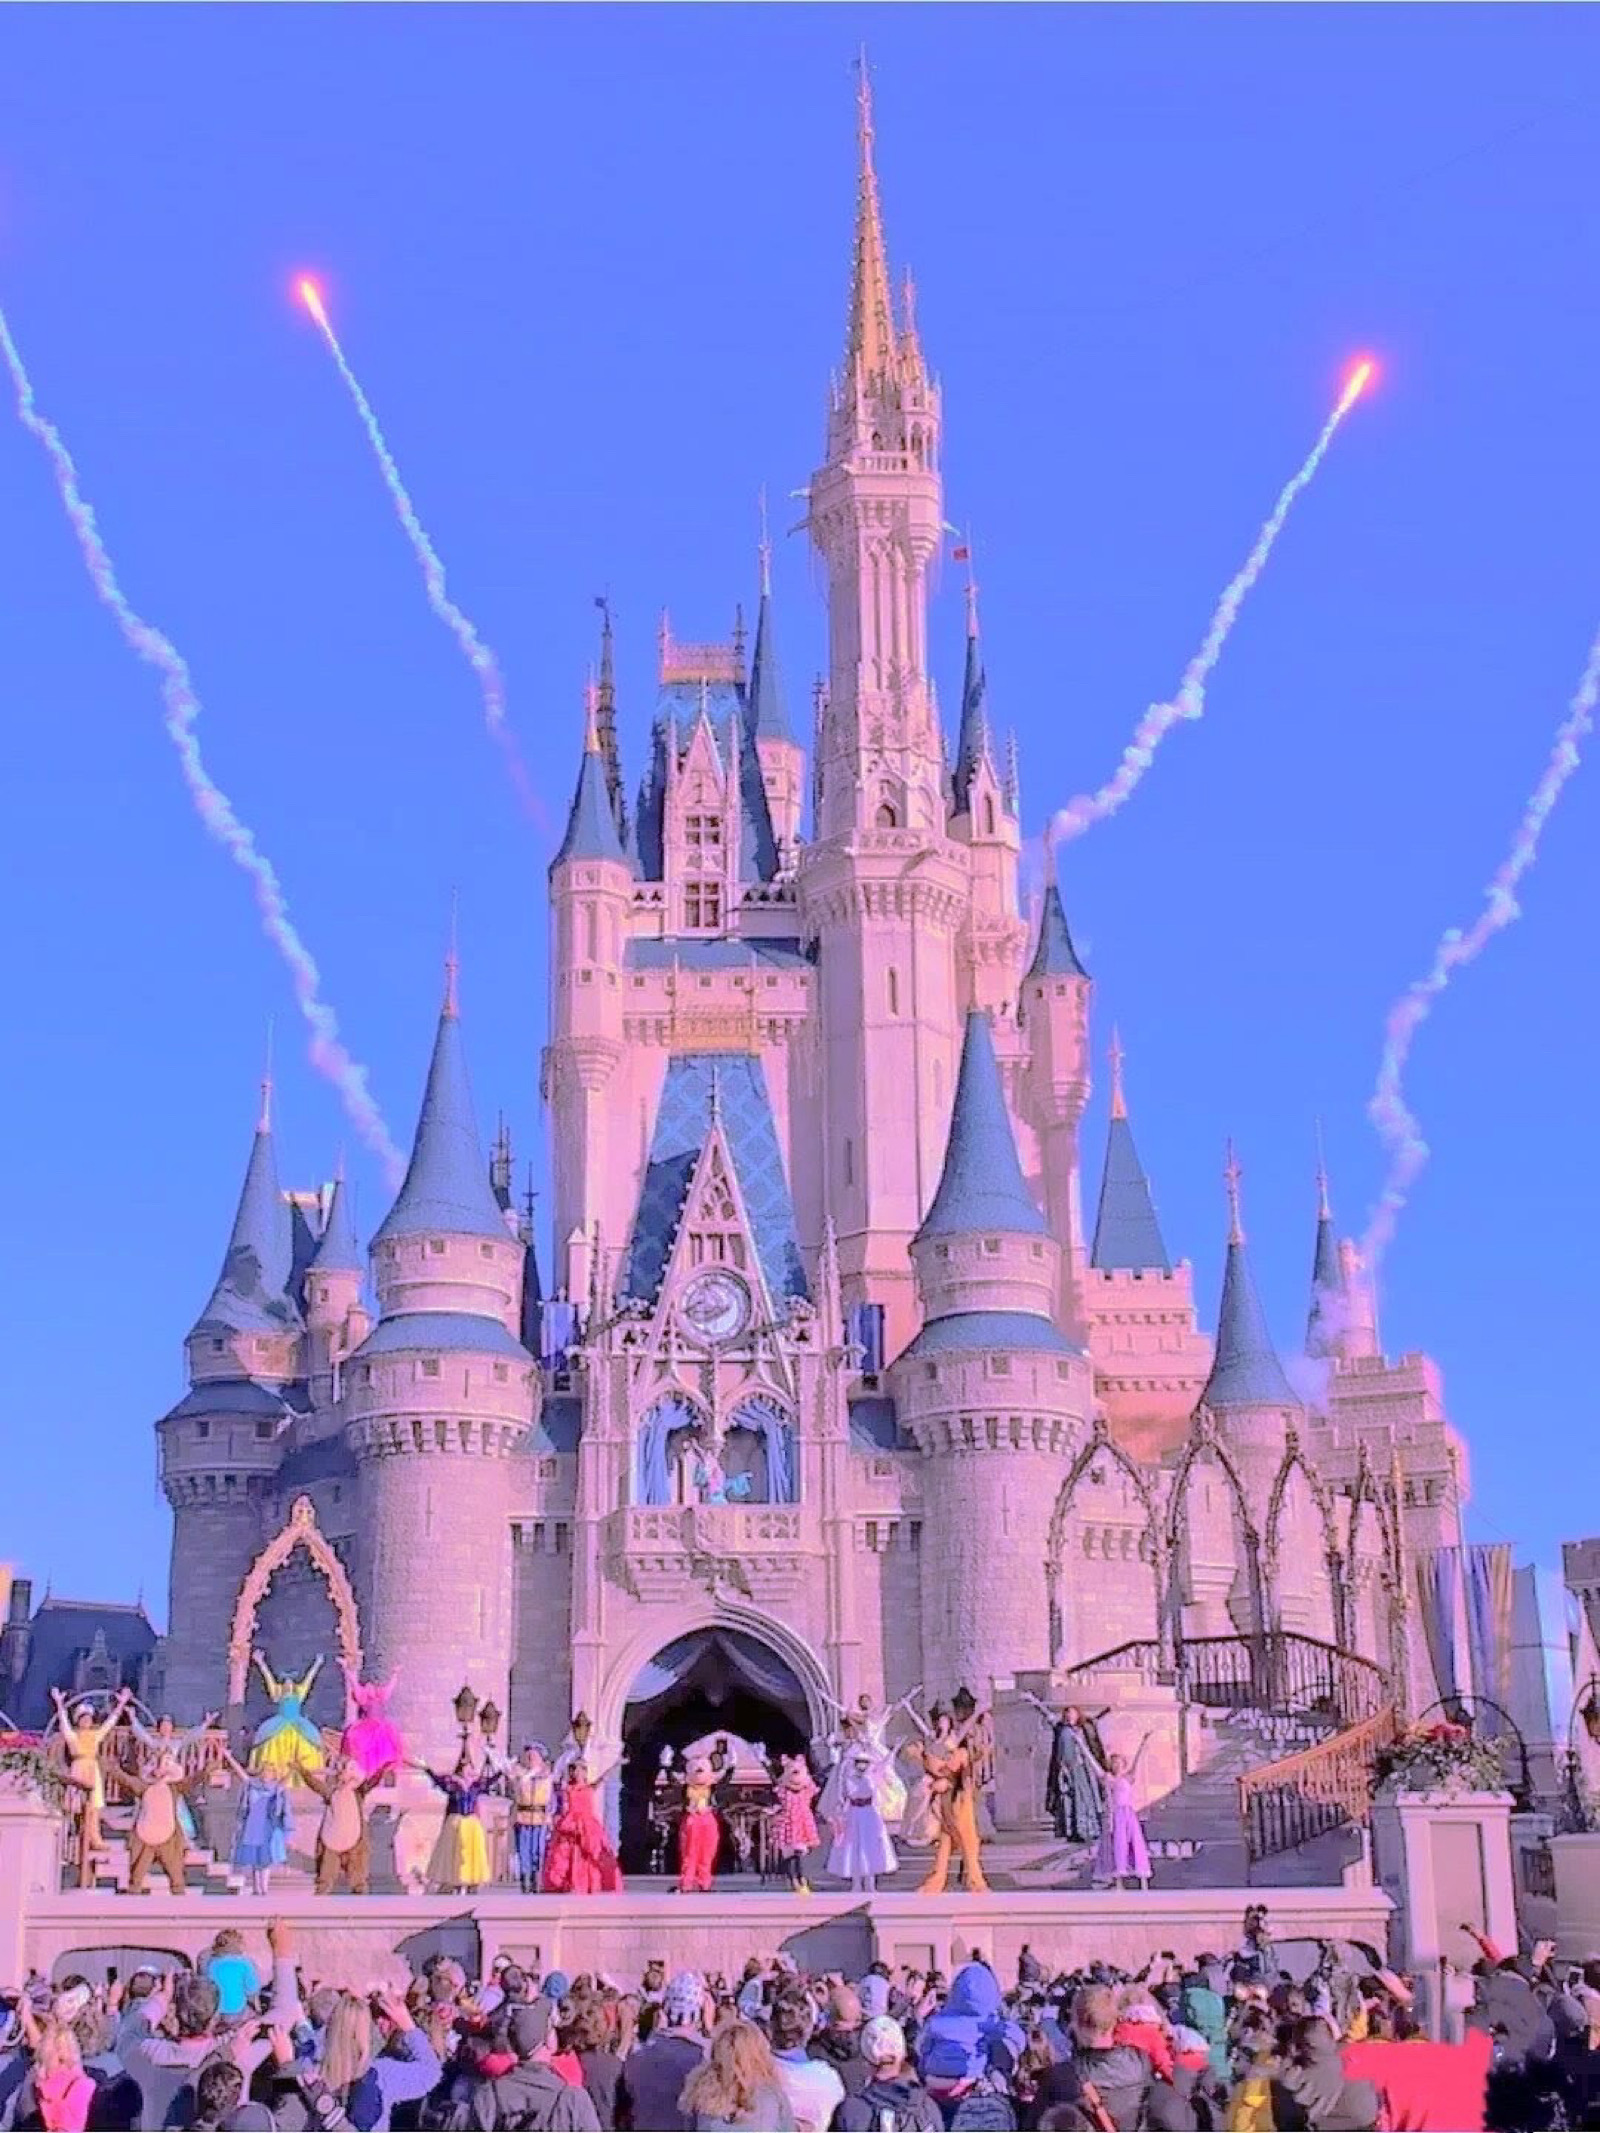 迪士尼城堡-纯洁而美丽的白雪公主图片